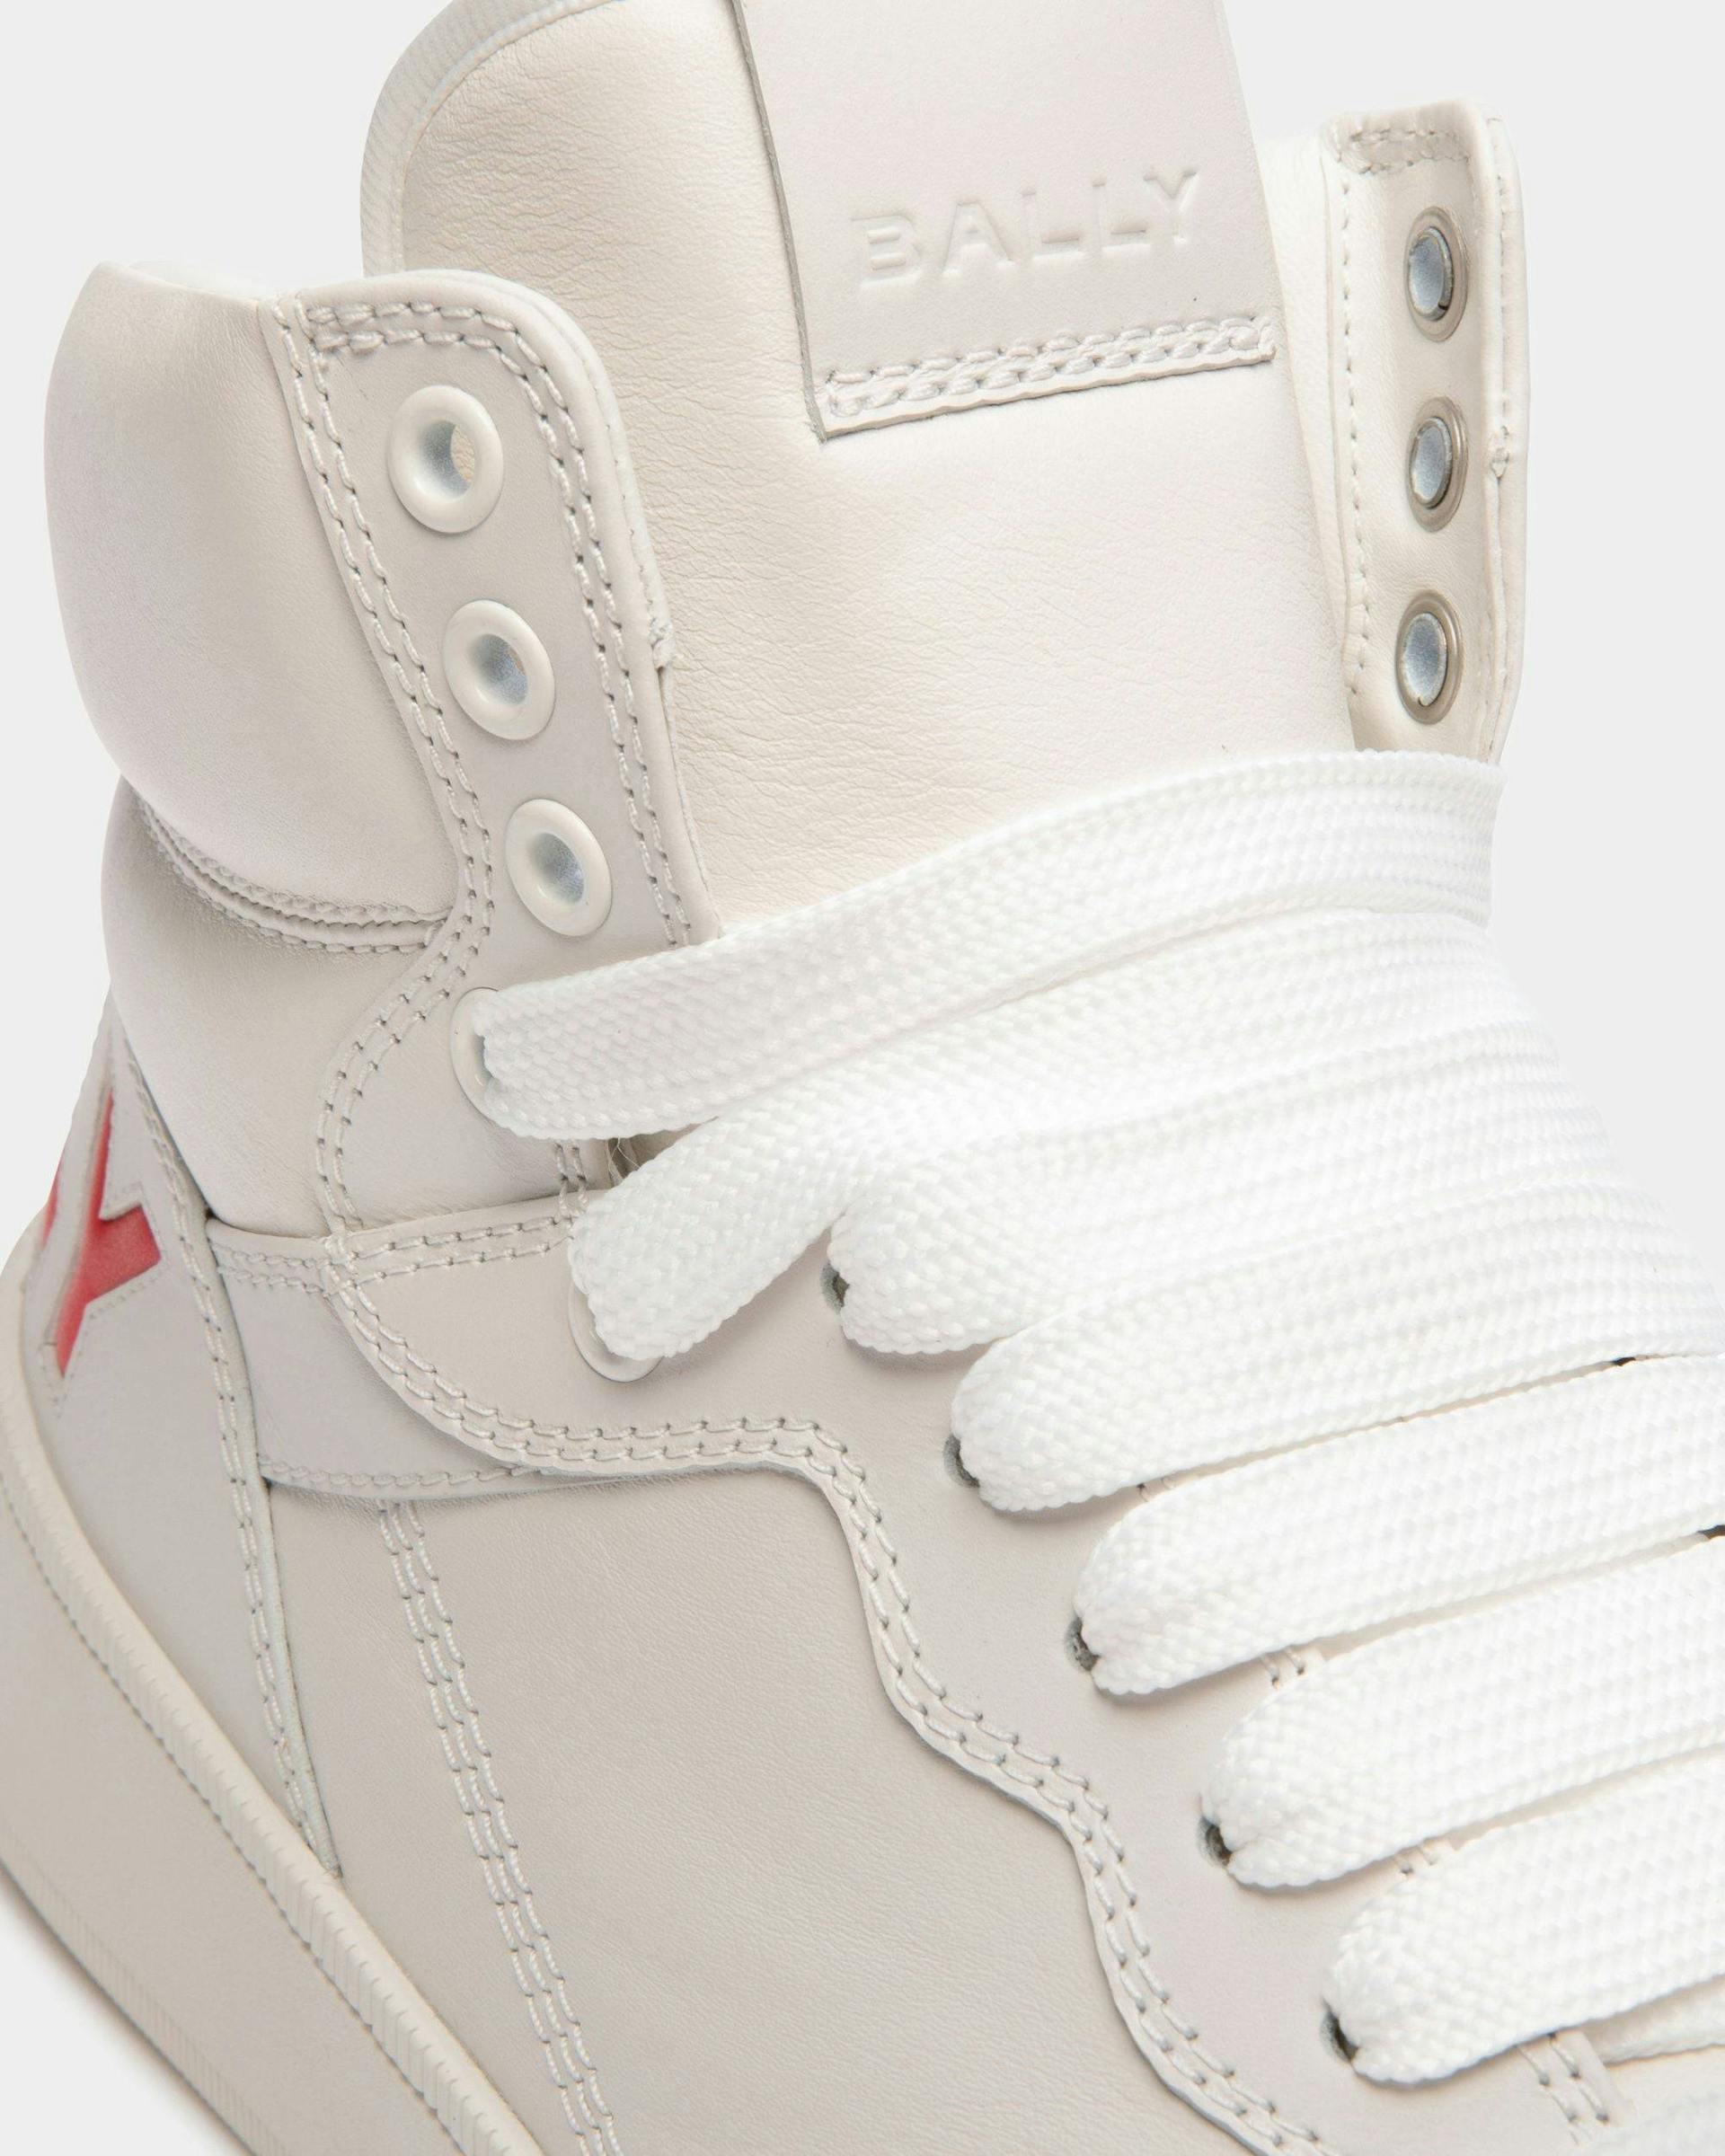 Men's Raise High-Top Sneaker in White Leather | Bally | Still Life Detail